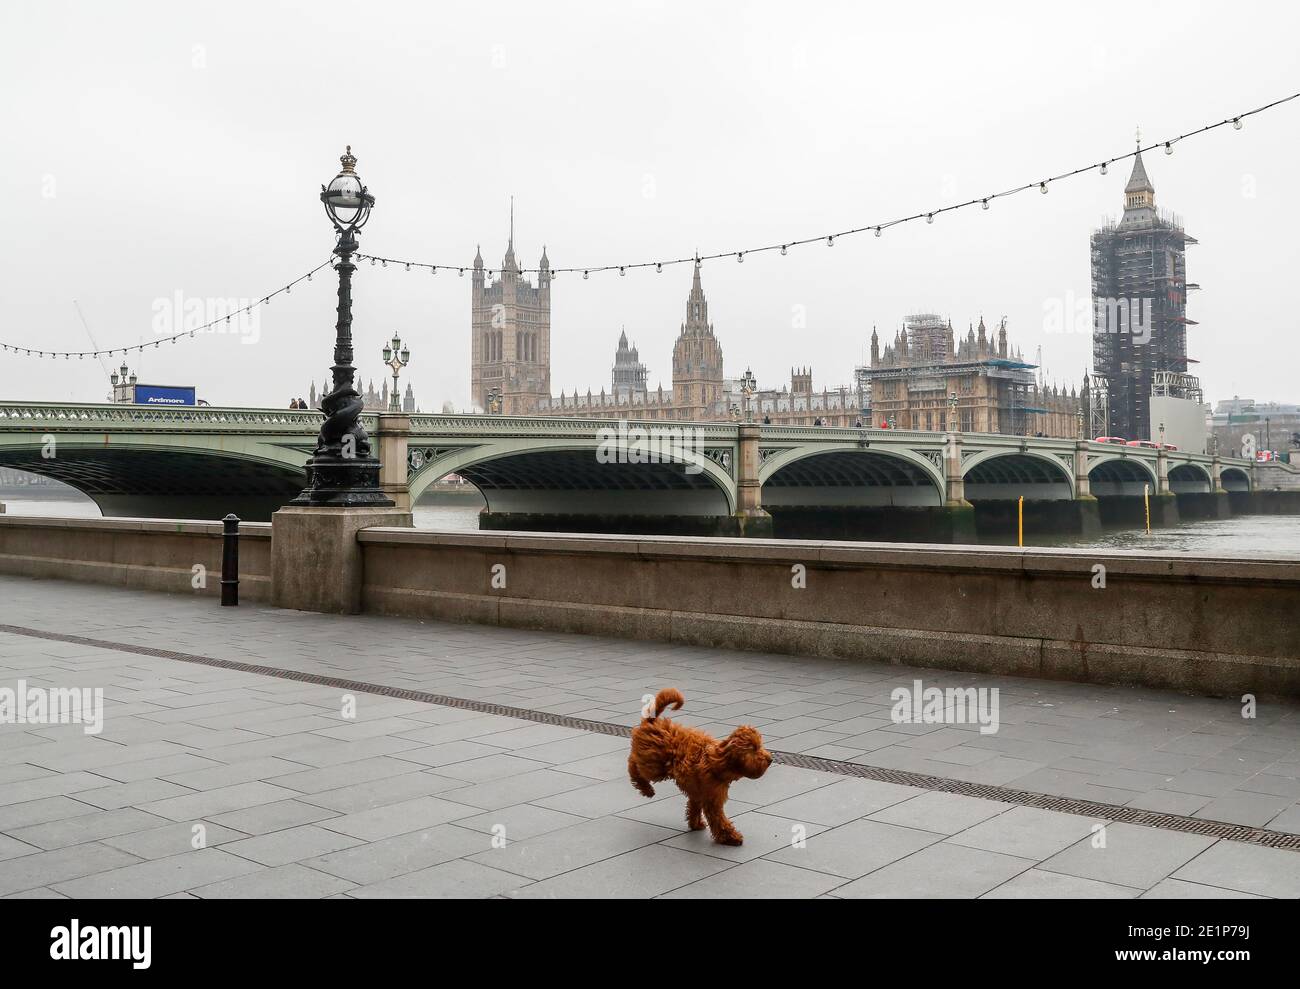 London, Großbritannien. Januar 2021. Ein Hund läuft an der Themse in London, Großbritannien, 8. Januar 2021. Großbritannien verzeichnete weitere 68,053 Coronavirus-Fälle, die höchste tägliche Zunahme seit Beginn der Pandemie im Land, offizielle Zahlen zeigten am Freitag.die Gesamtzahl der Coronavirus-Fälle im Land beträgt 2,957,472, die Daten zeigten. Auch am Freitag erklärte der Bürgermeister von London Sadiq Khan einen "großen Zwischenfall" in der britischen Hauptstadt, da steigende Coronavirus-Fälle die Krankenhäuser zu überwältigen drohen. Quelle: Han Yan/Xinhua/Alamy Live News Stockfoto